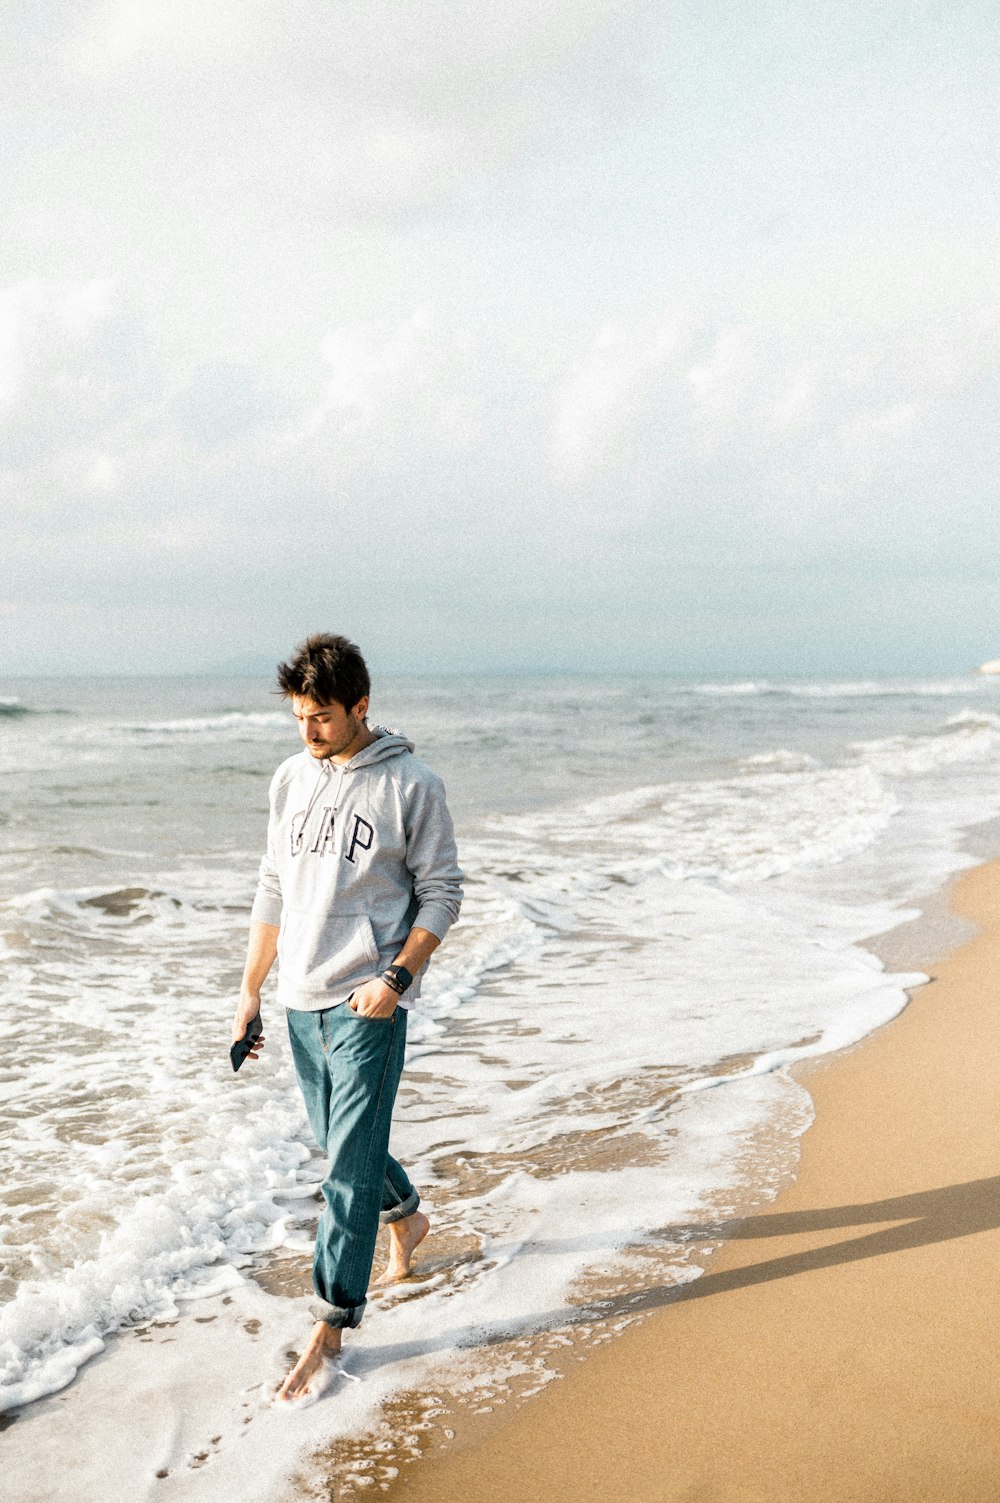 회색 긴팔 셔츠와 녹색 반바지를 입은 남자가 낮 동안 해변에 서 있다